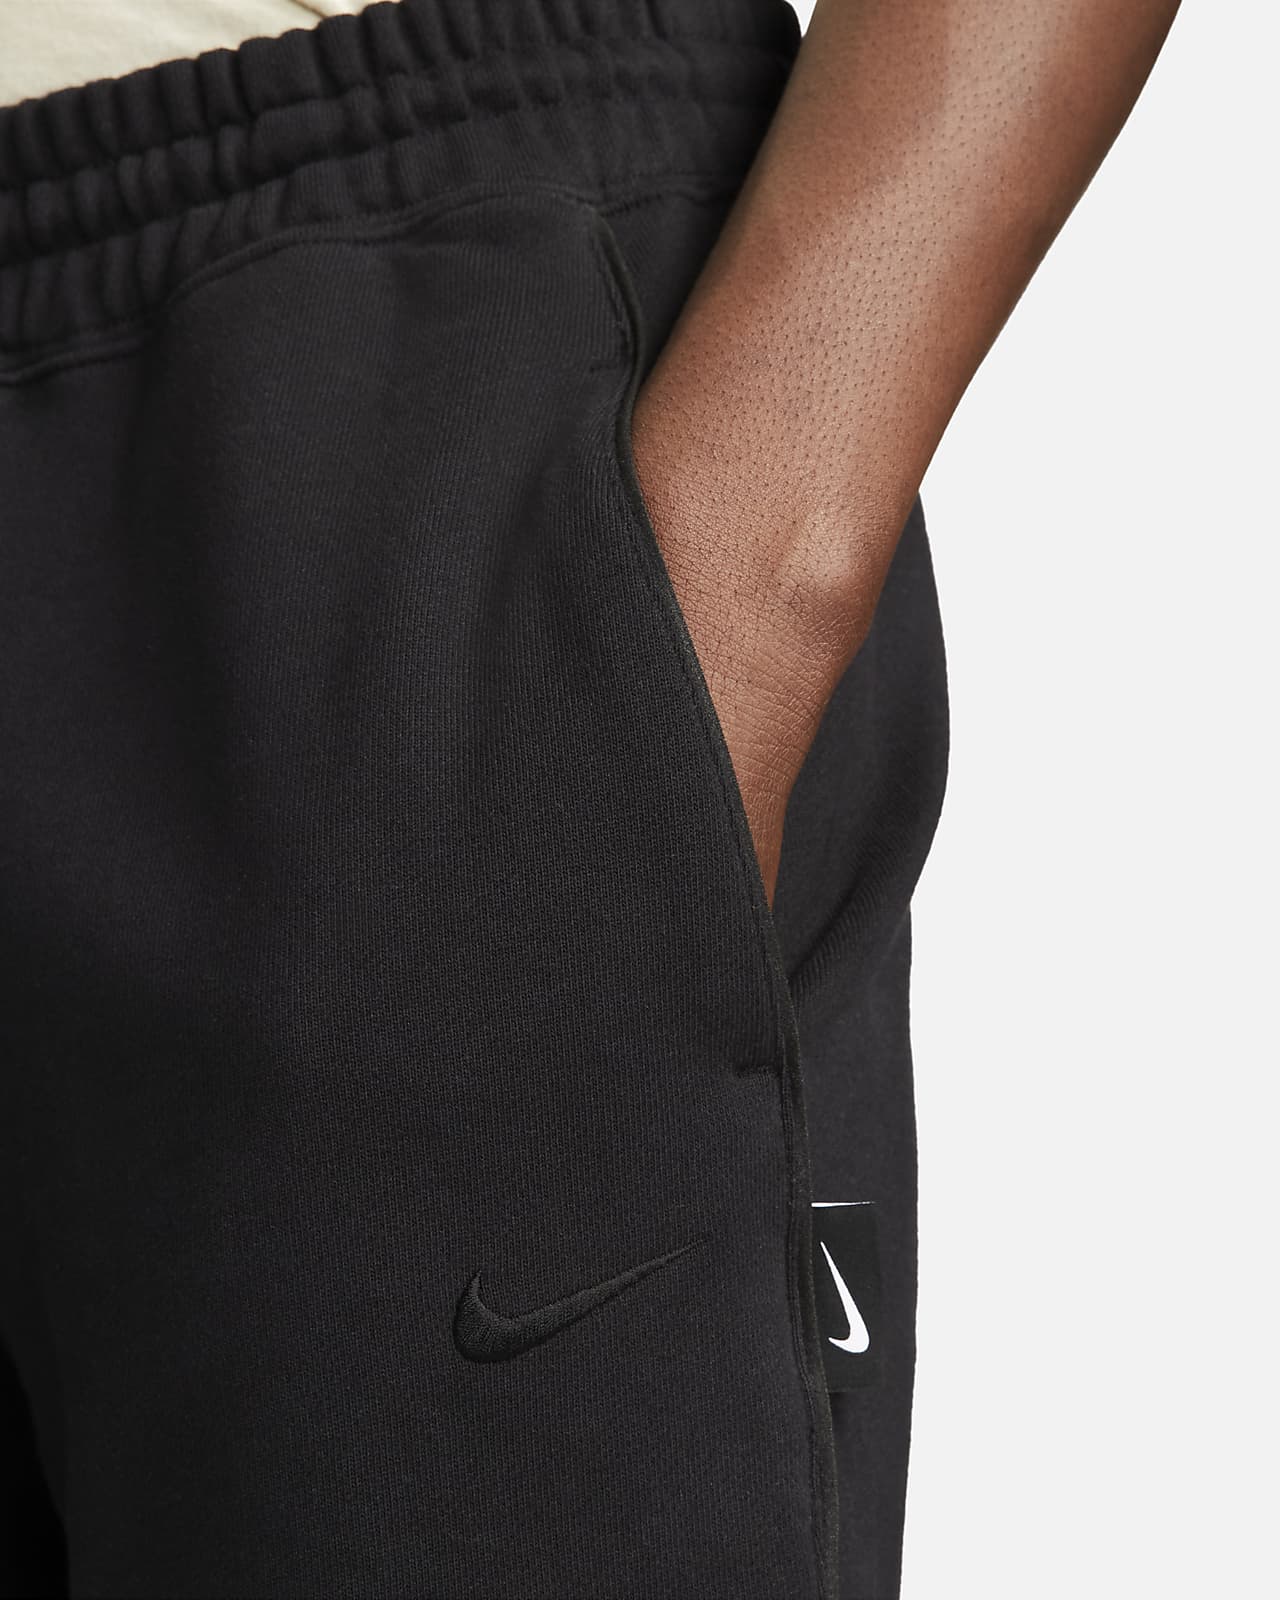 Nike Pantalon Sportswear Swoosh Fleece Noir